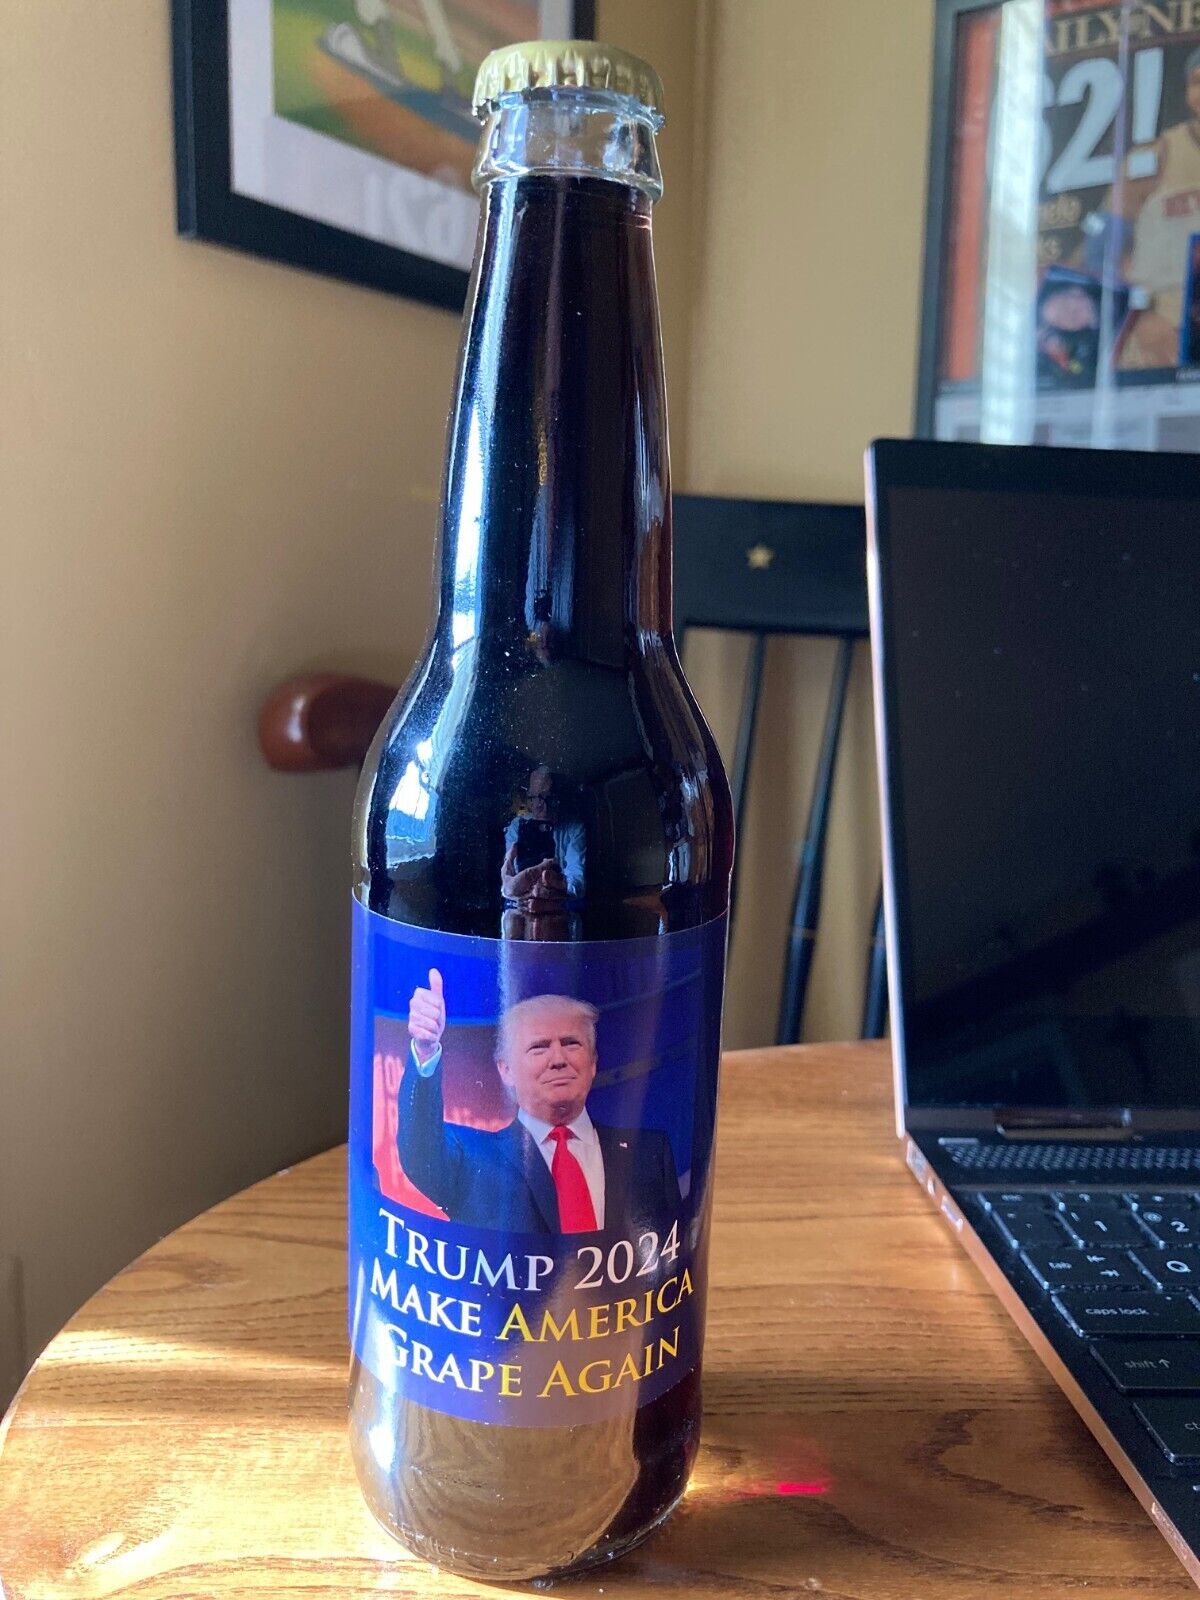   Donald Trump 2024 Make America Grape Again Soda Bottle - RARE UNOPENED